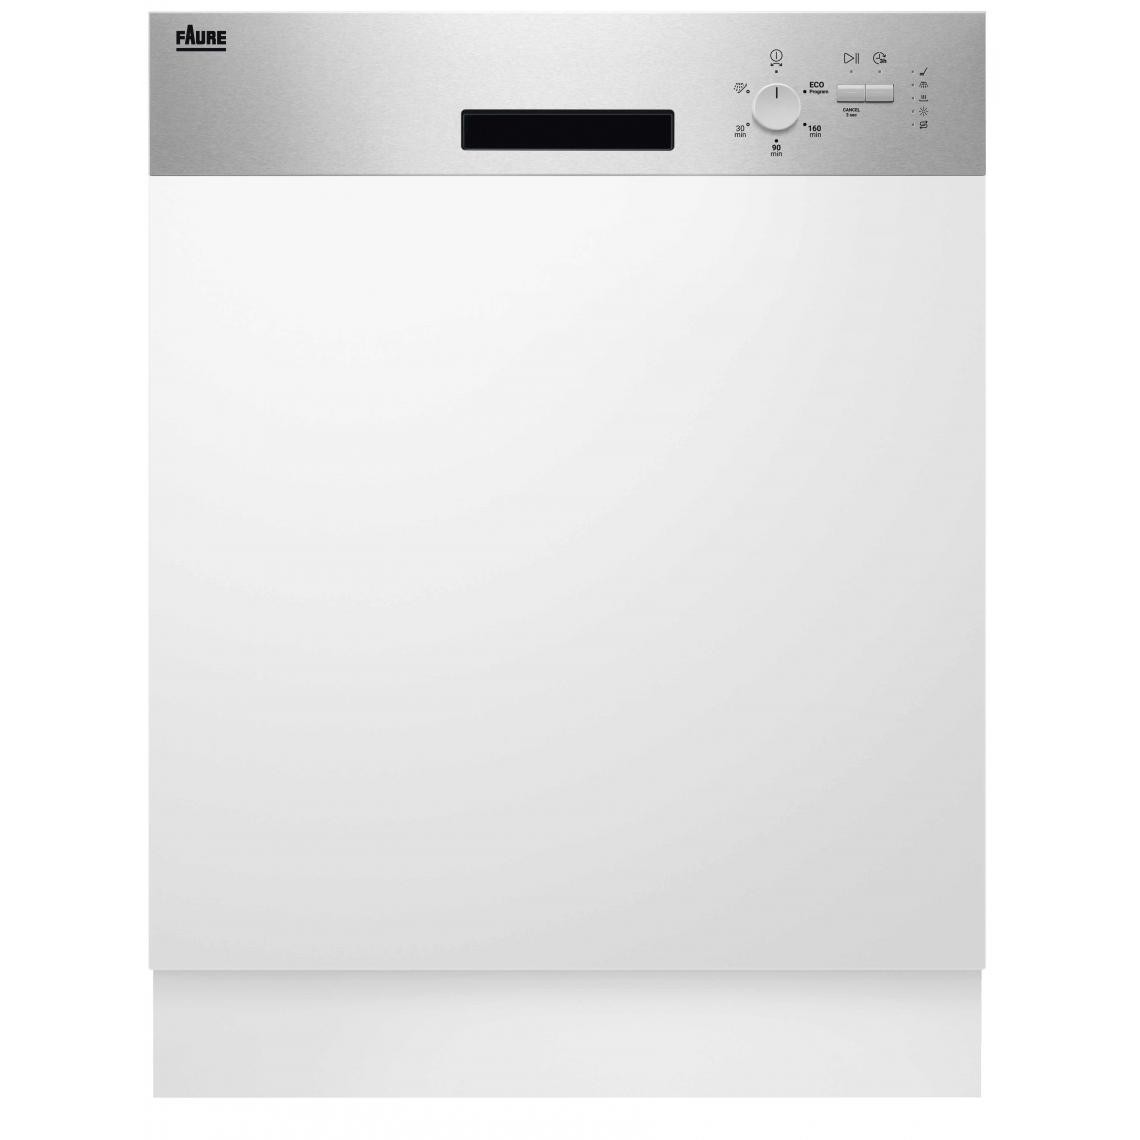 Faure - Lave vaisselle integrable 60 cm FDSN151X3 - Lave-vaisselle